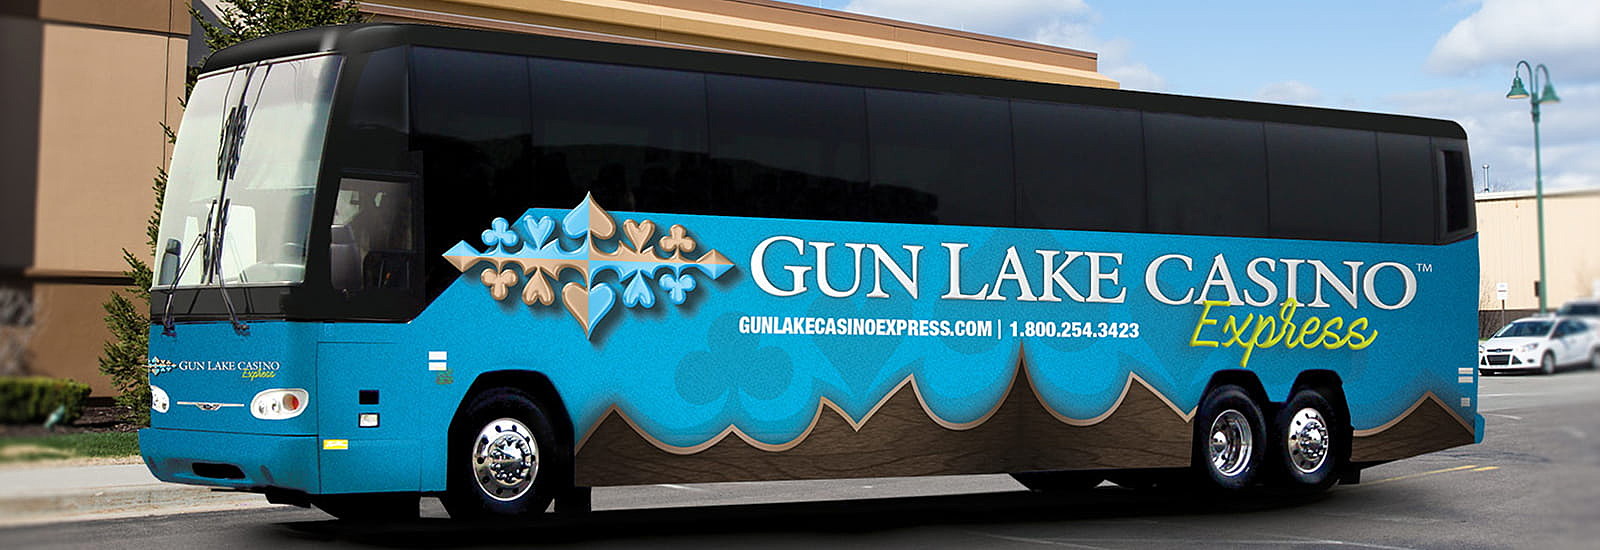 gun lake casino restaurant menu